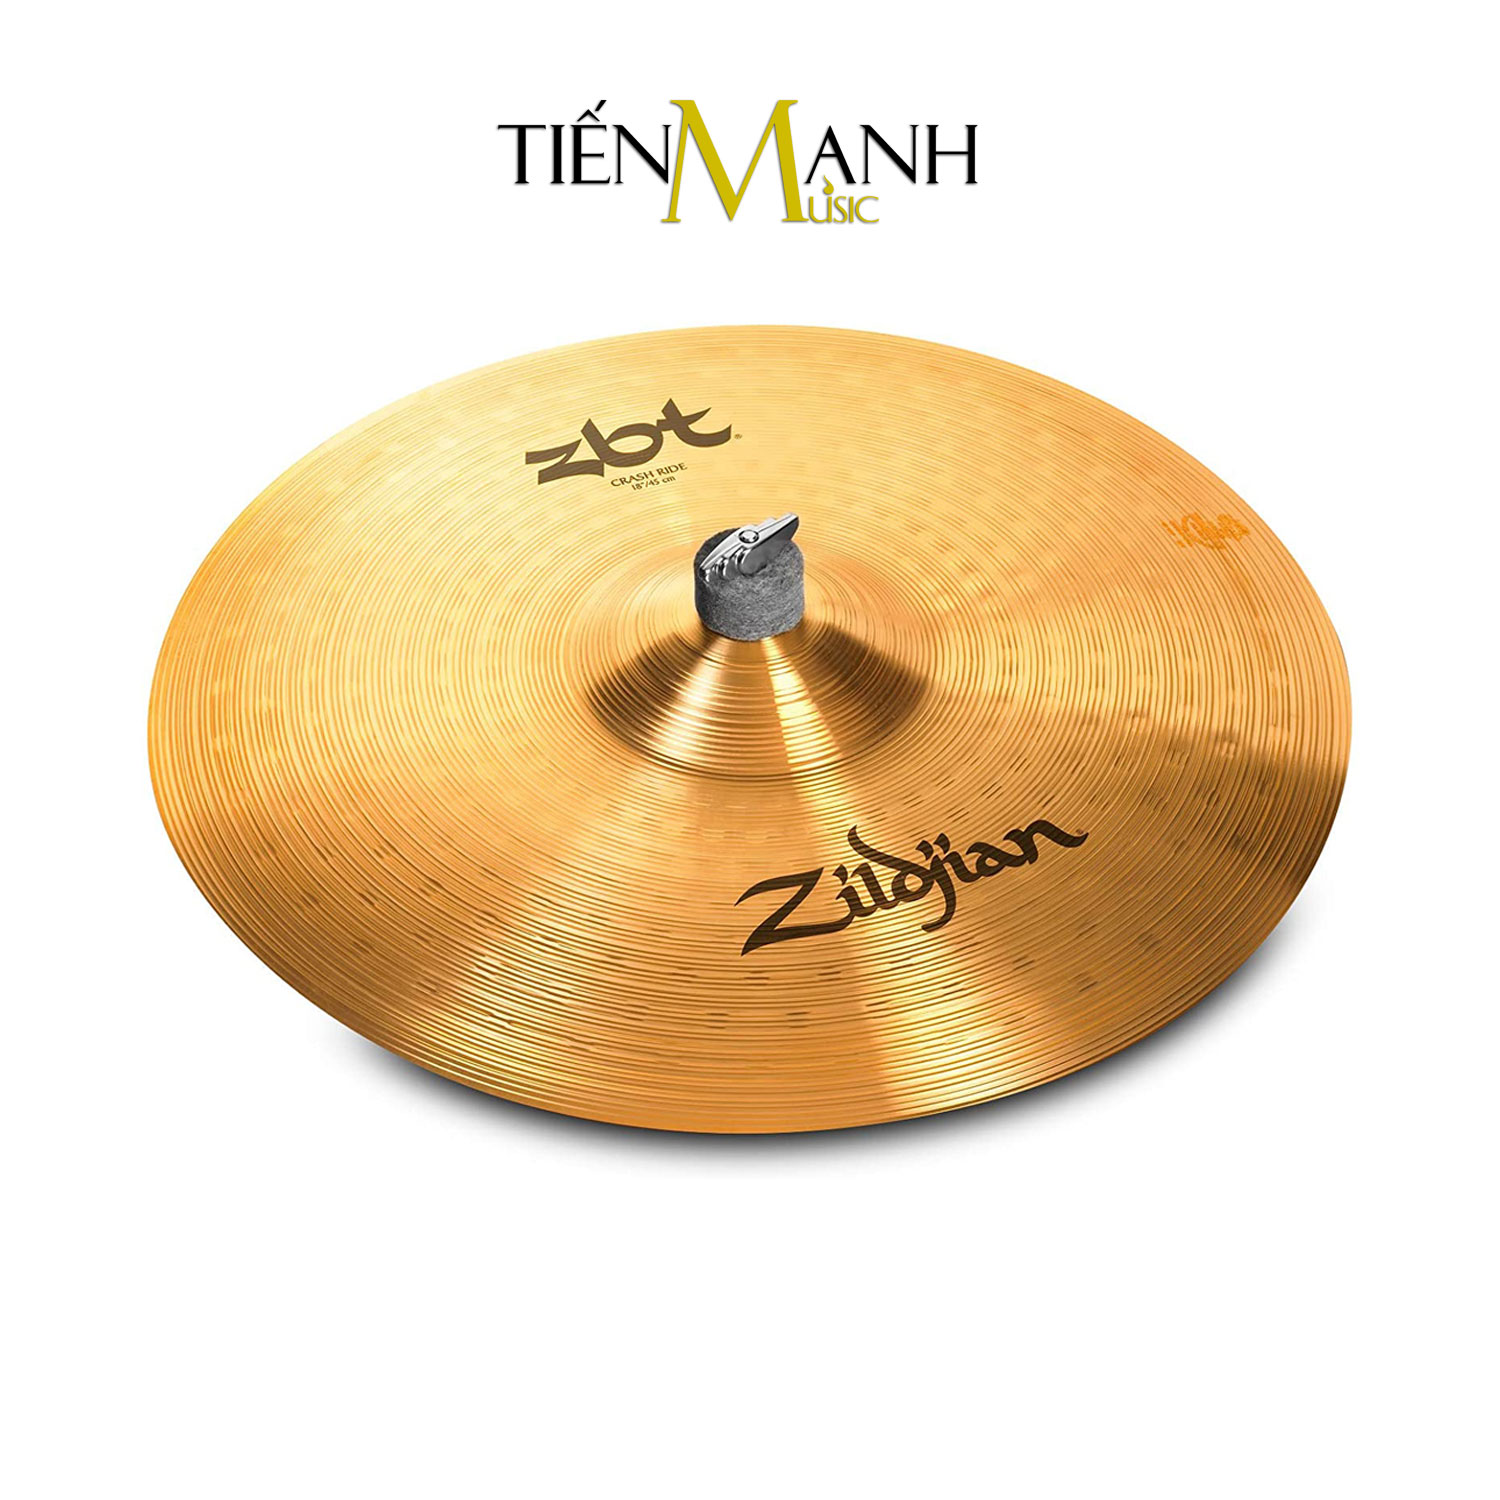 [Chính Hãng USA] Bộ Cymbal Zildjian ZBTS3P-9 Box set (13-14-18) ZBTS3P9 - Kèm Móng Gẩy DreamMaker